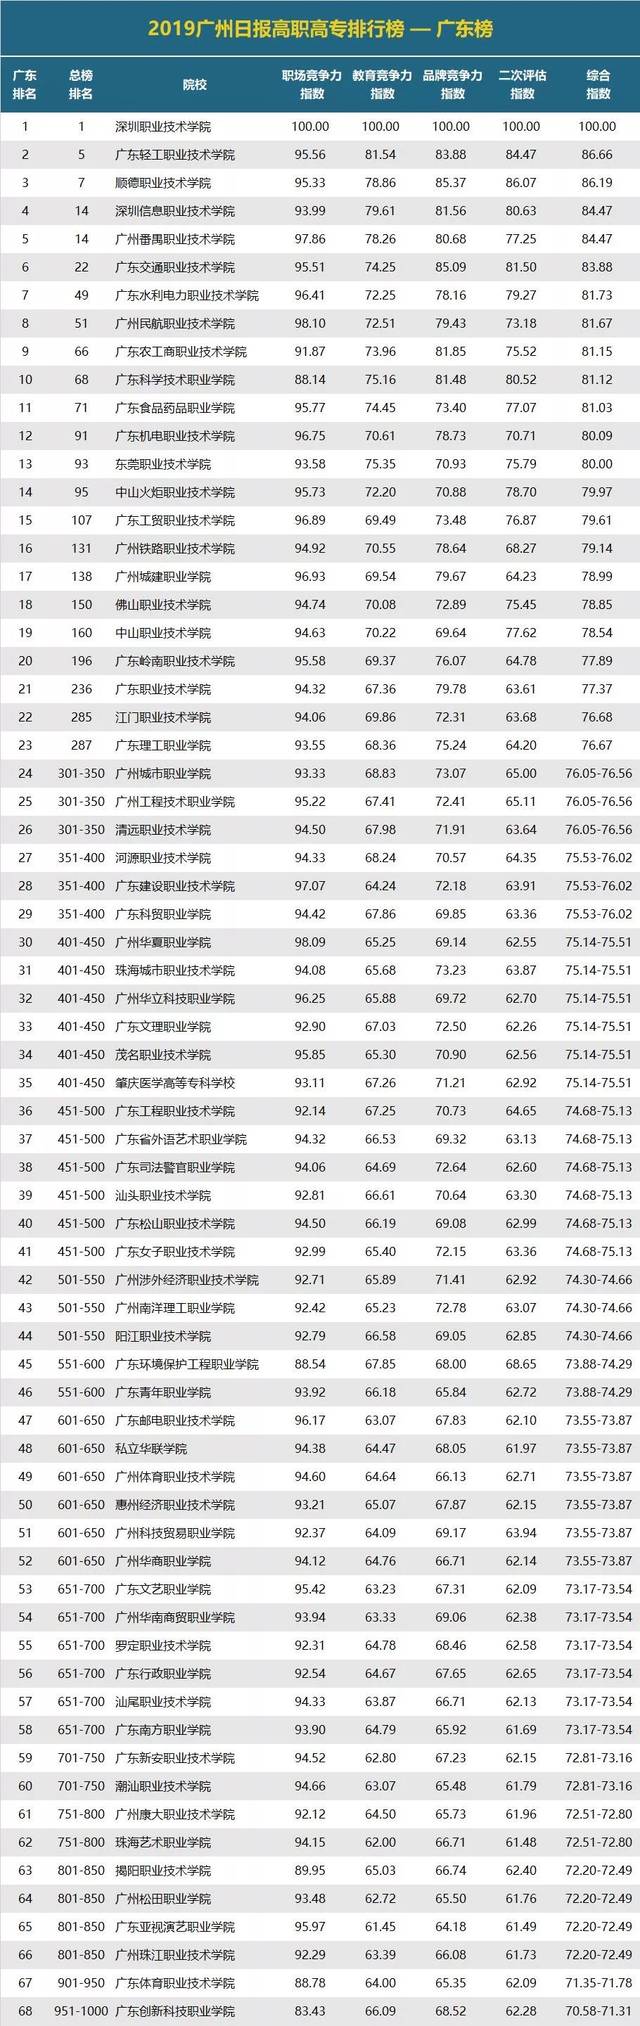 在 2019广州高职高专排行榜top1000中,广东省上榜 68所.